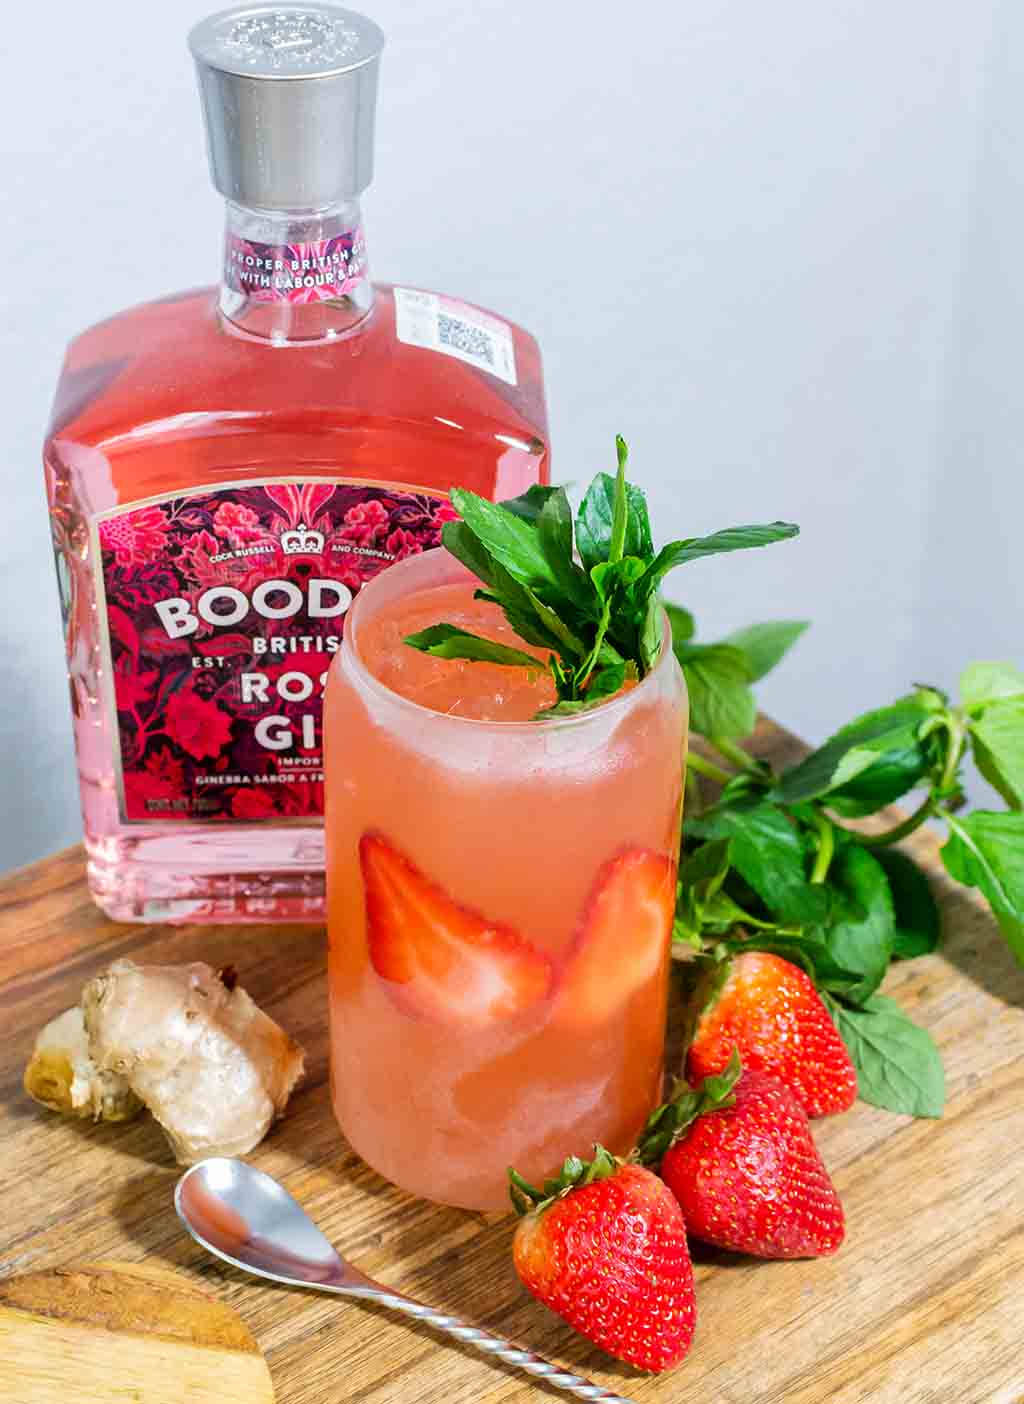 Boodles Rose Gin Strawberry Mojito Wallpaper